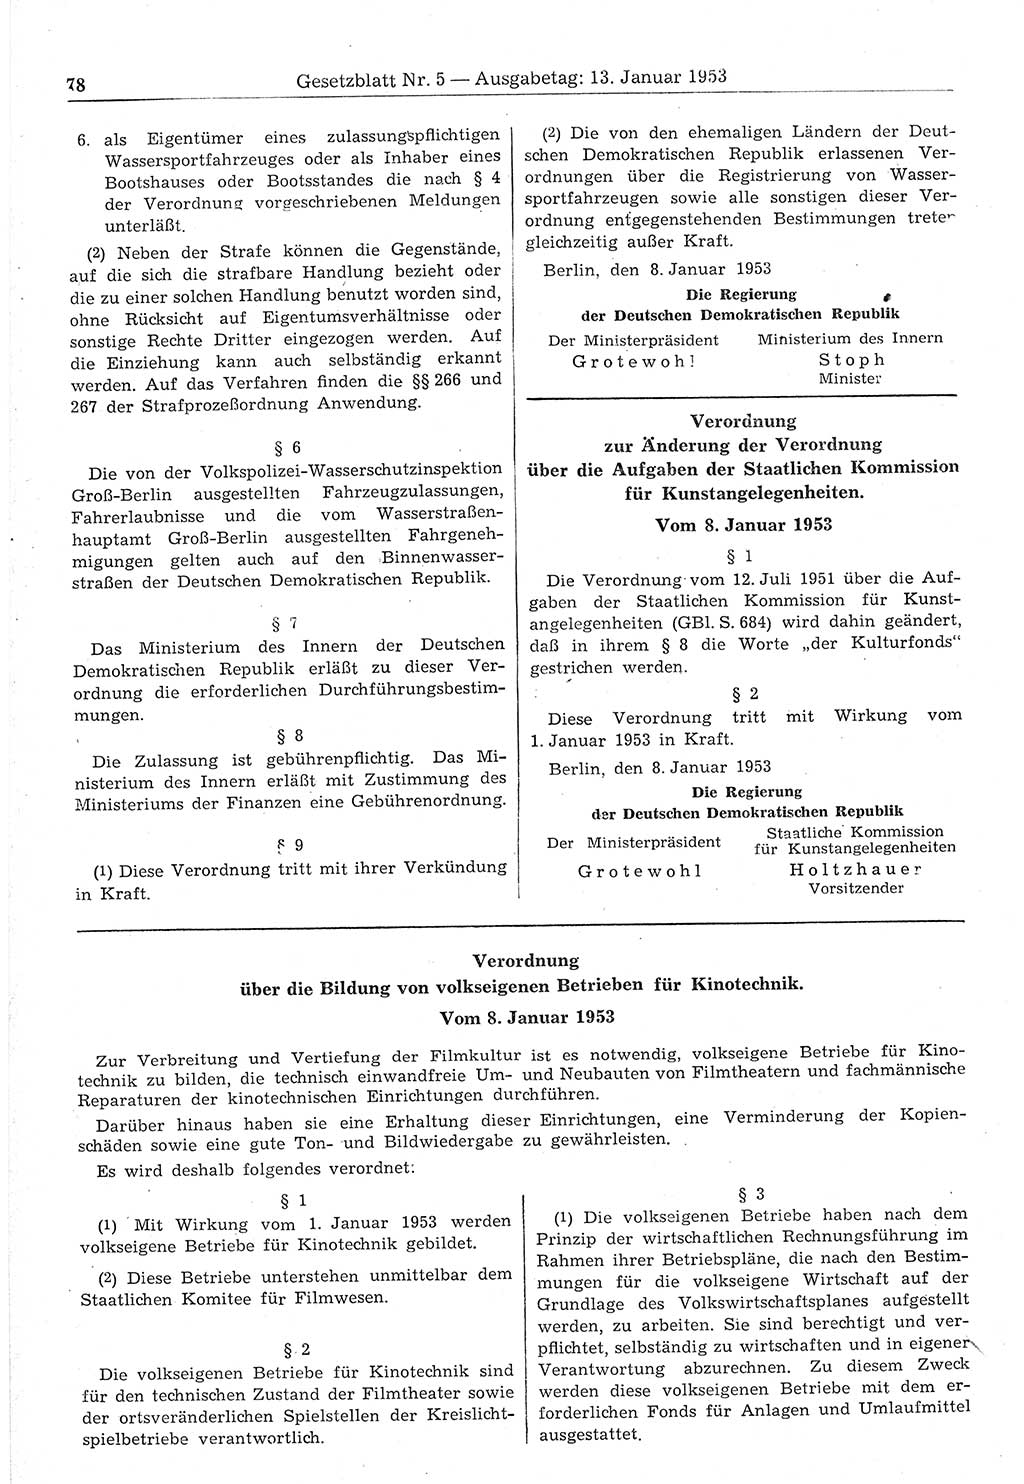 Gesetzblatt (GBl.) der Deutschen Demokratischen Republik (DDR) 1953, Seite 78 (GBl. DDR 1953, S. 78)